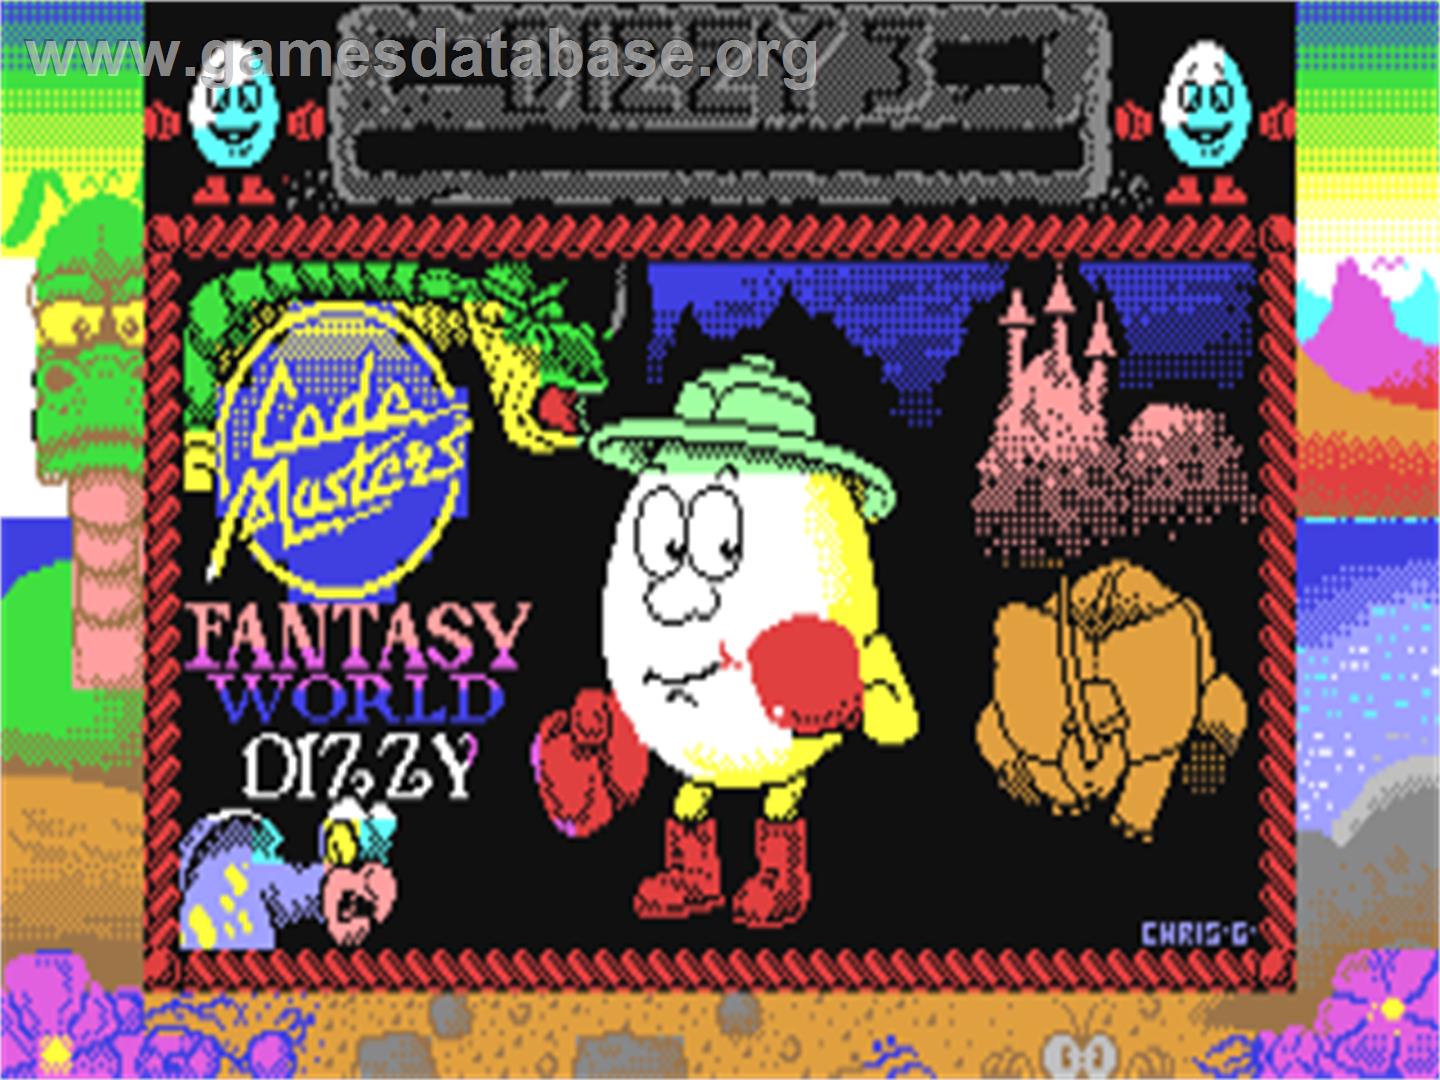 Fantasy World Dizzy - Commodore 64 - Artwork - Title Screen